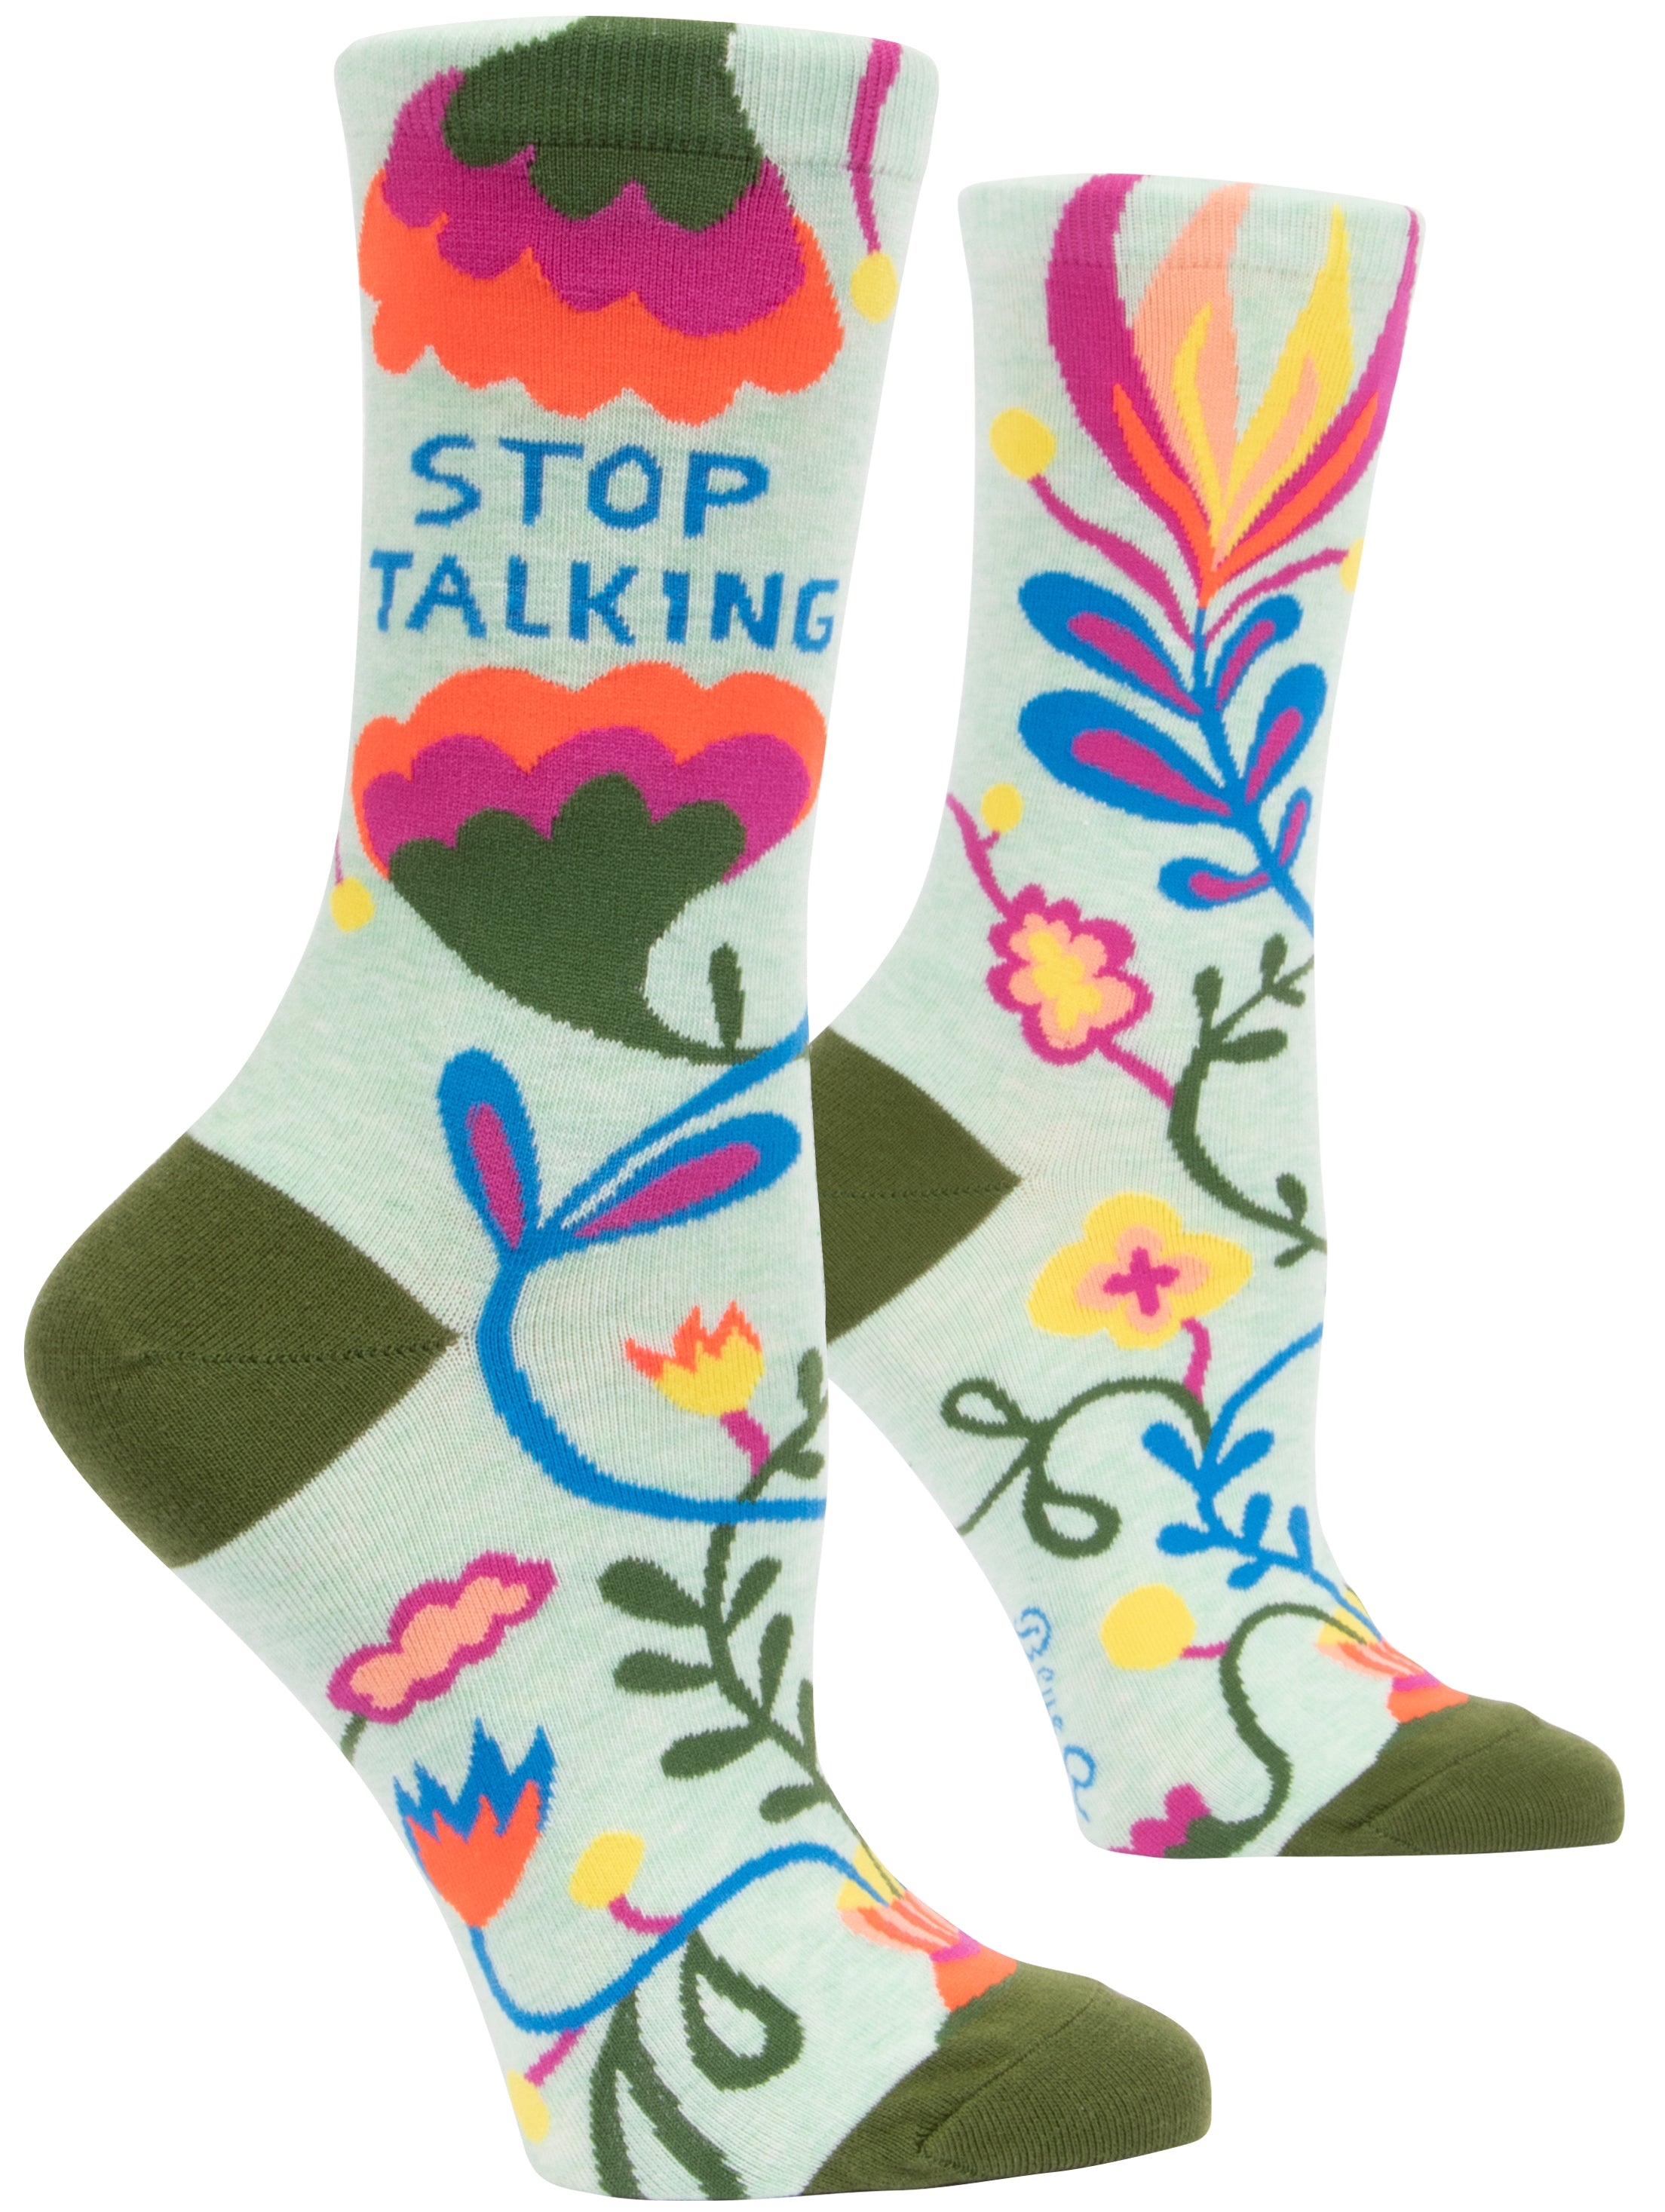 Blue Q - Crew Socks - Stop Talking